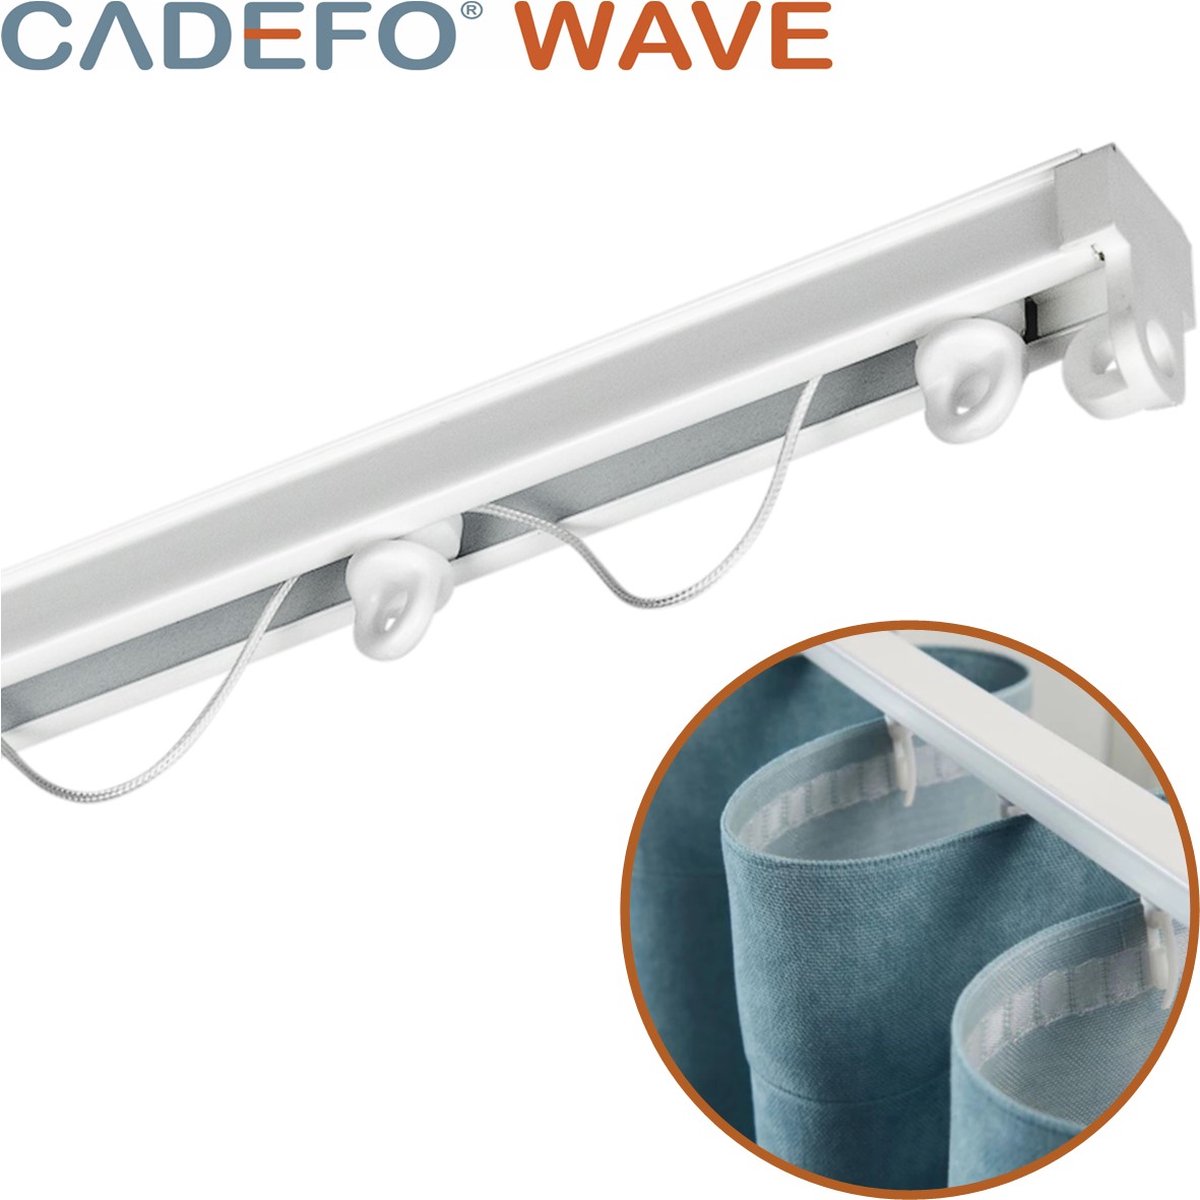 CADEFO WAVE (301 - 350 cm) Gordijnrails - Compleet op maat! - UIT 1 STUK - Leverbaar tot 6 meter - Plafondbevestiging - Lengte 321 cm